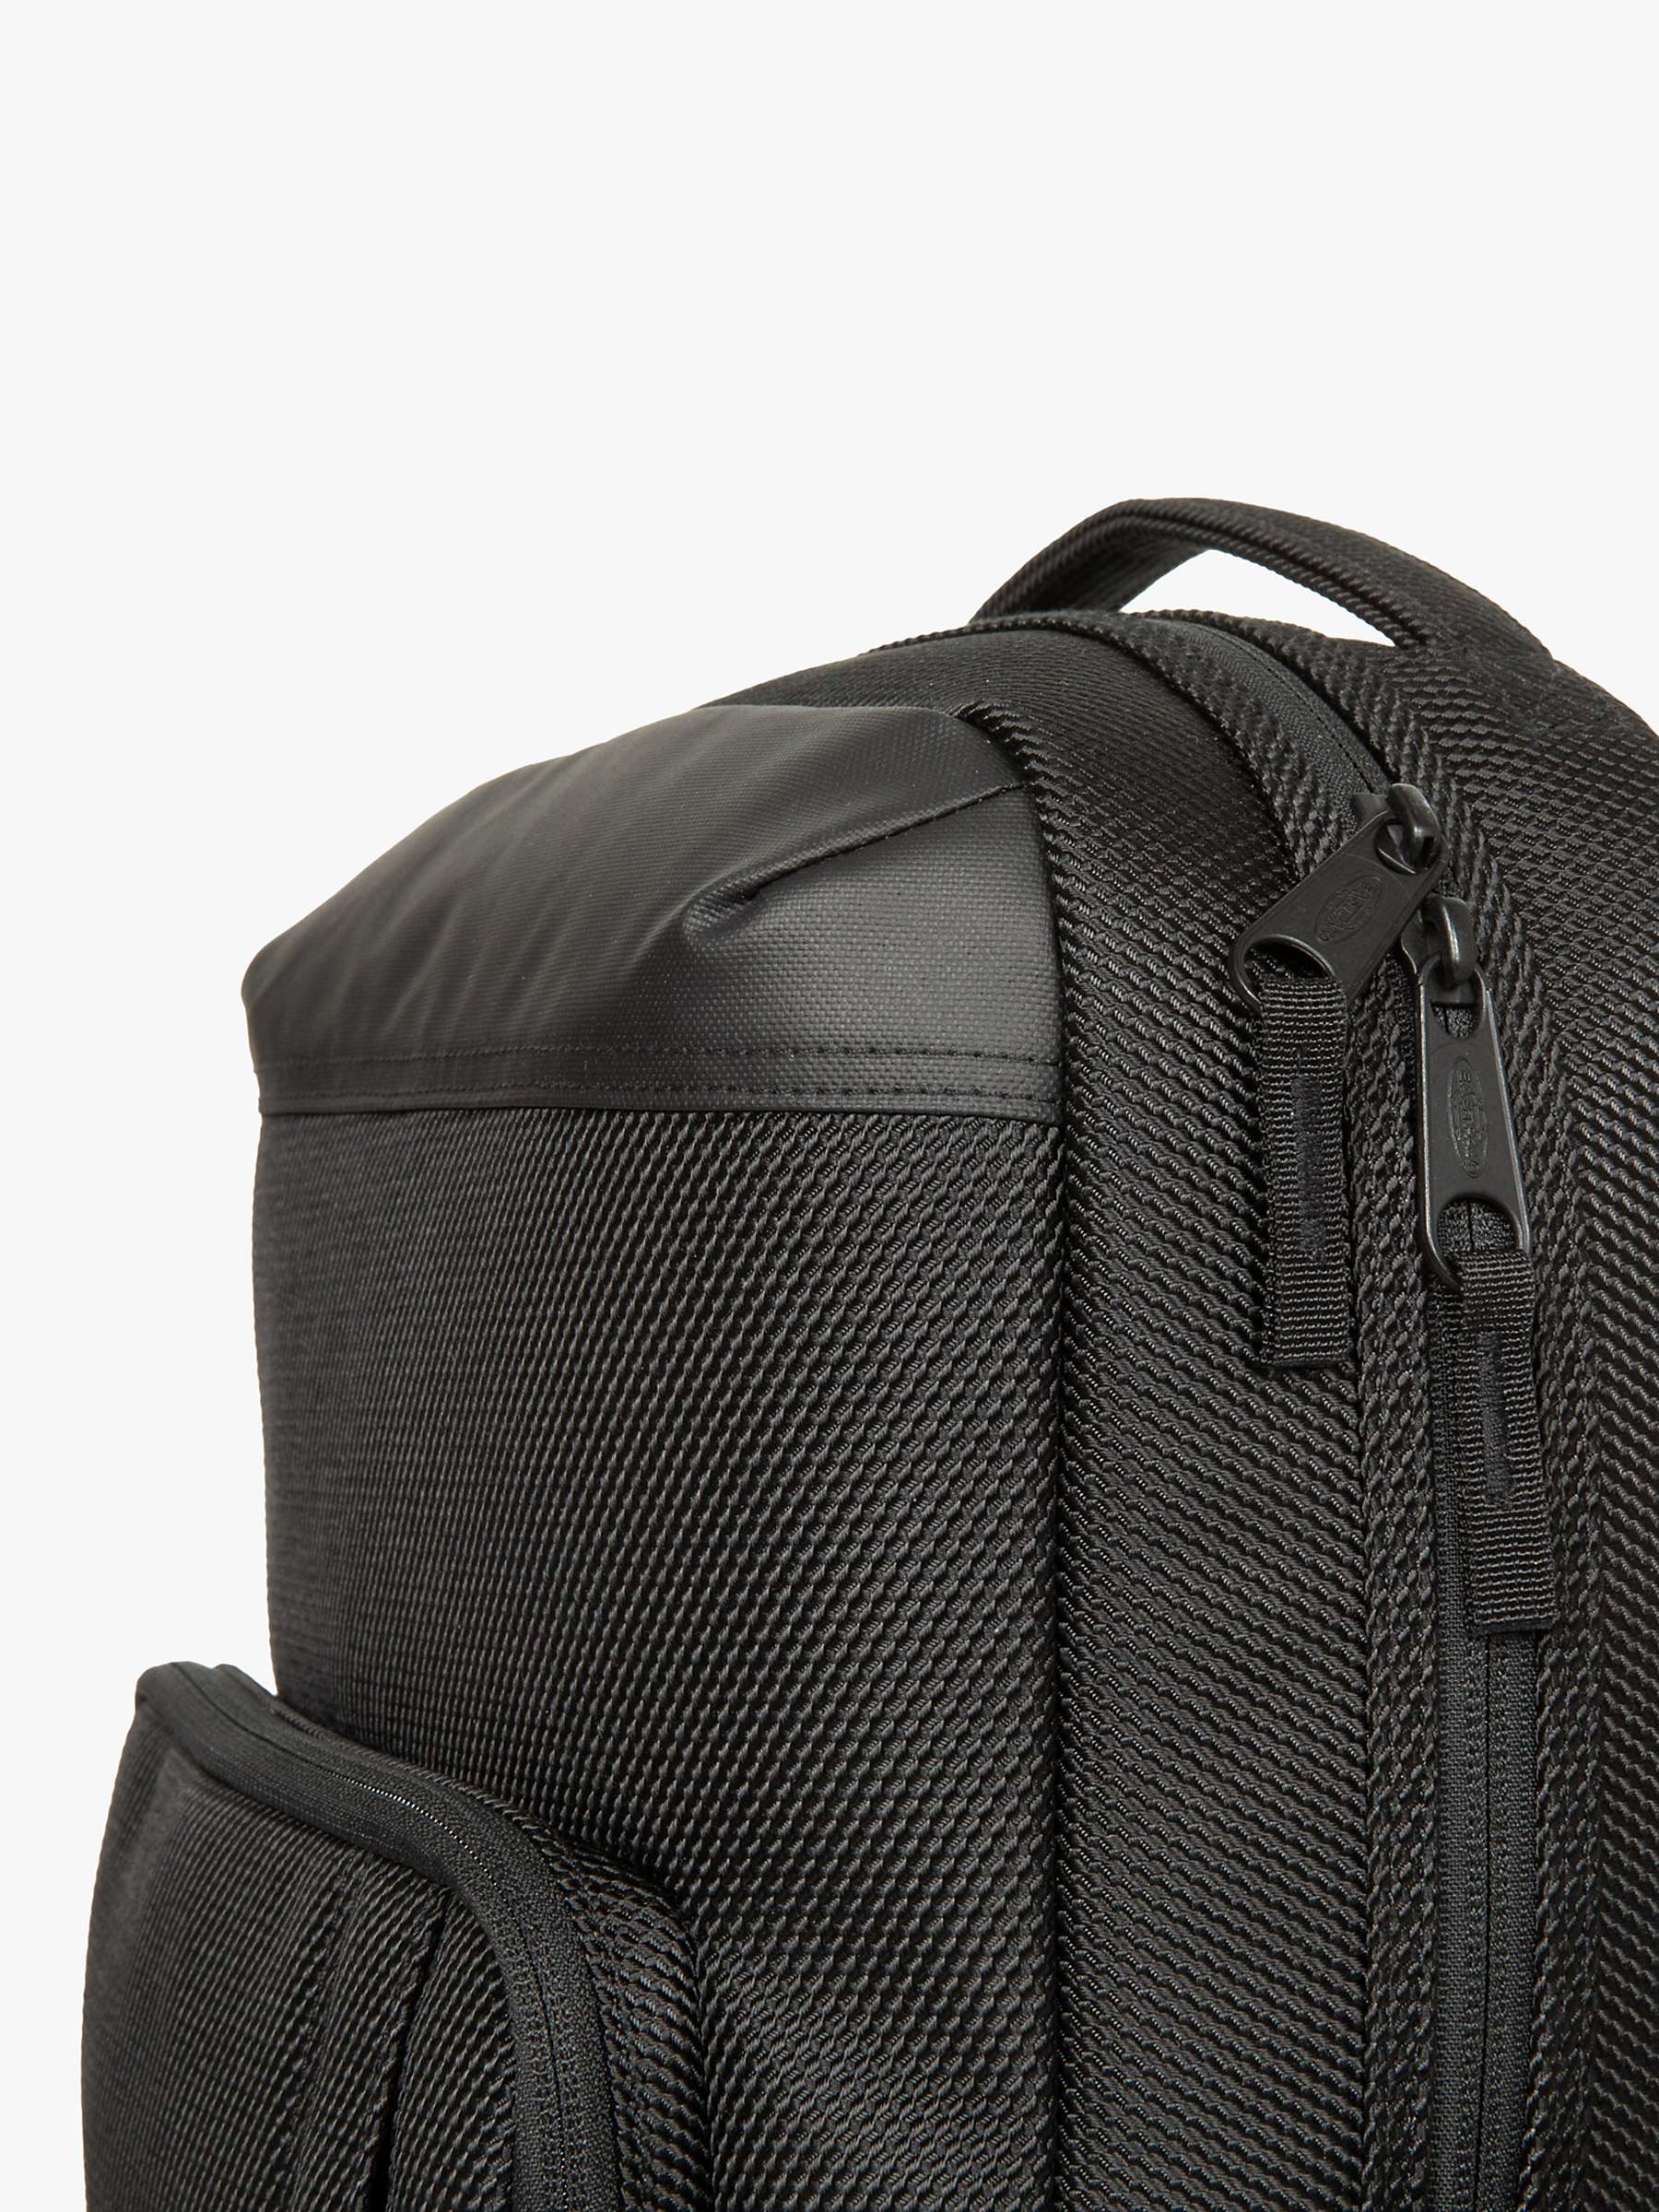 Buy Eastpak Lifestyle Backpack, Cnnct Coat Online at johnlewis.com